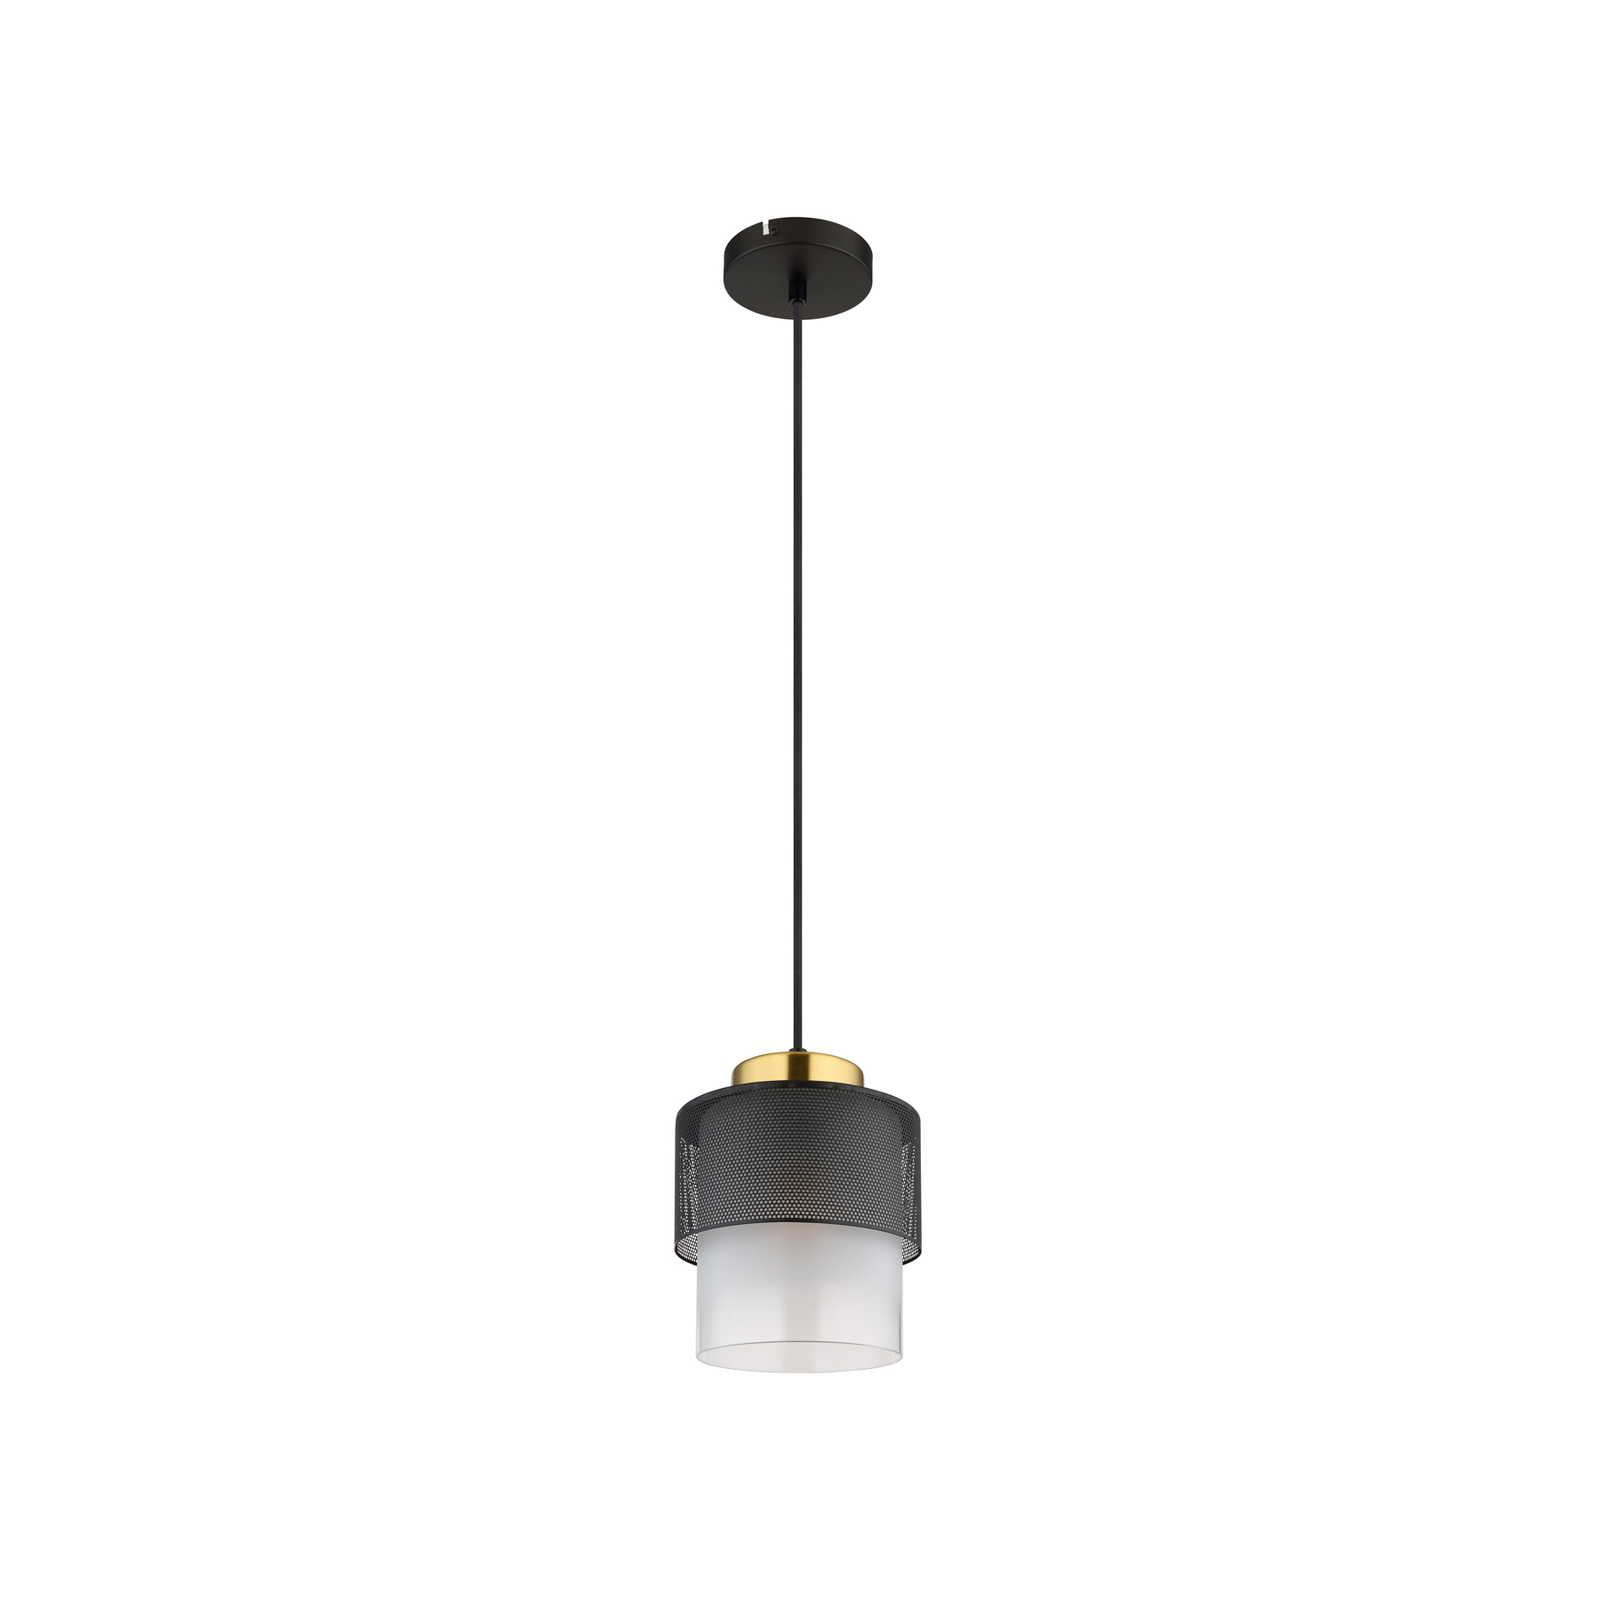 Hanglamp Olga, Ø 18 cm, zwart, metaal/glas